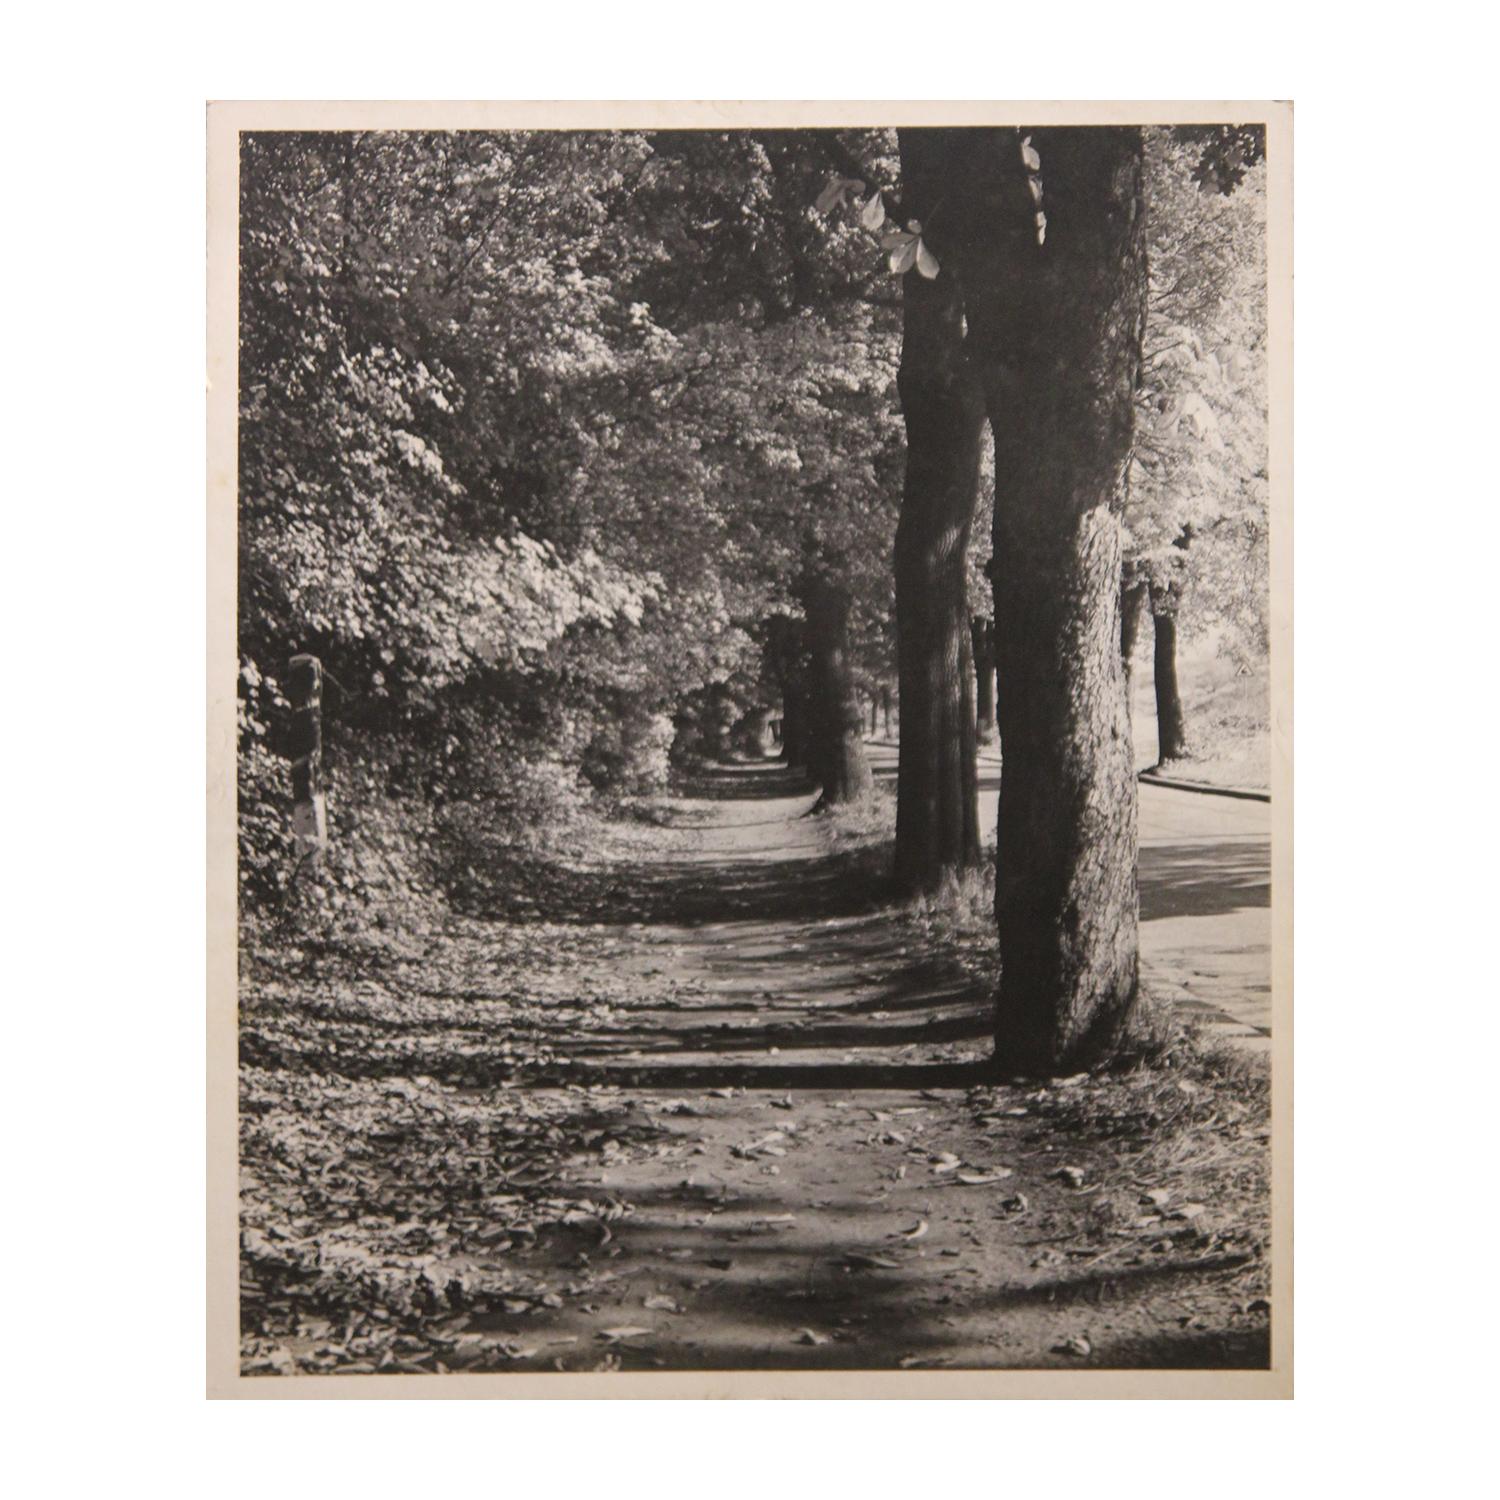 Landscape Photograph Unknown - Photographie perspective en noir et blanc d'un trottoir avec arbres